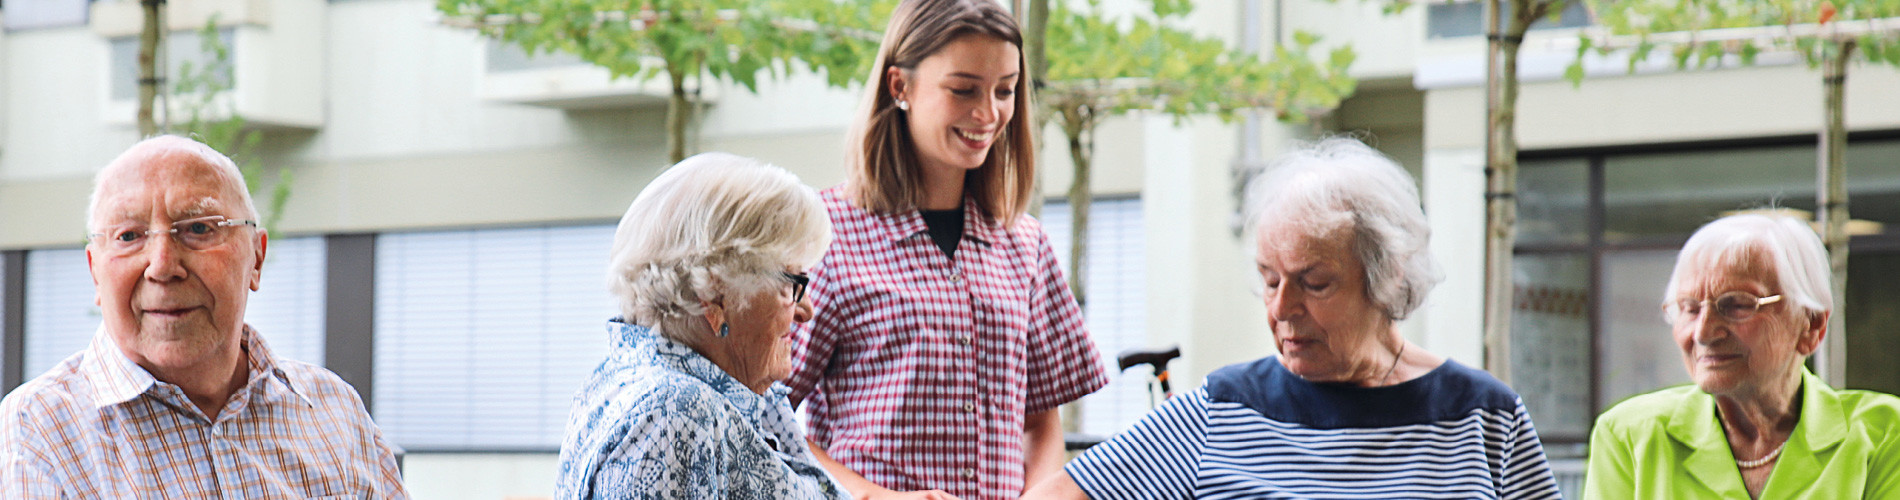 Altenpflegehelfer - Alte Menschen unterstützen und helfen Altenpflegehelfer